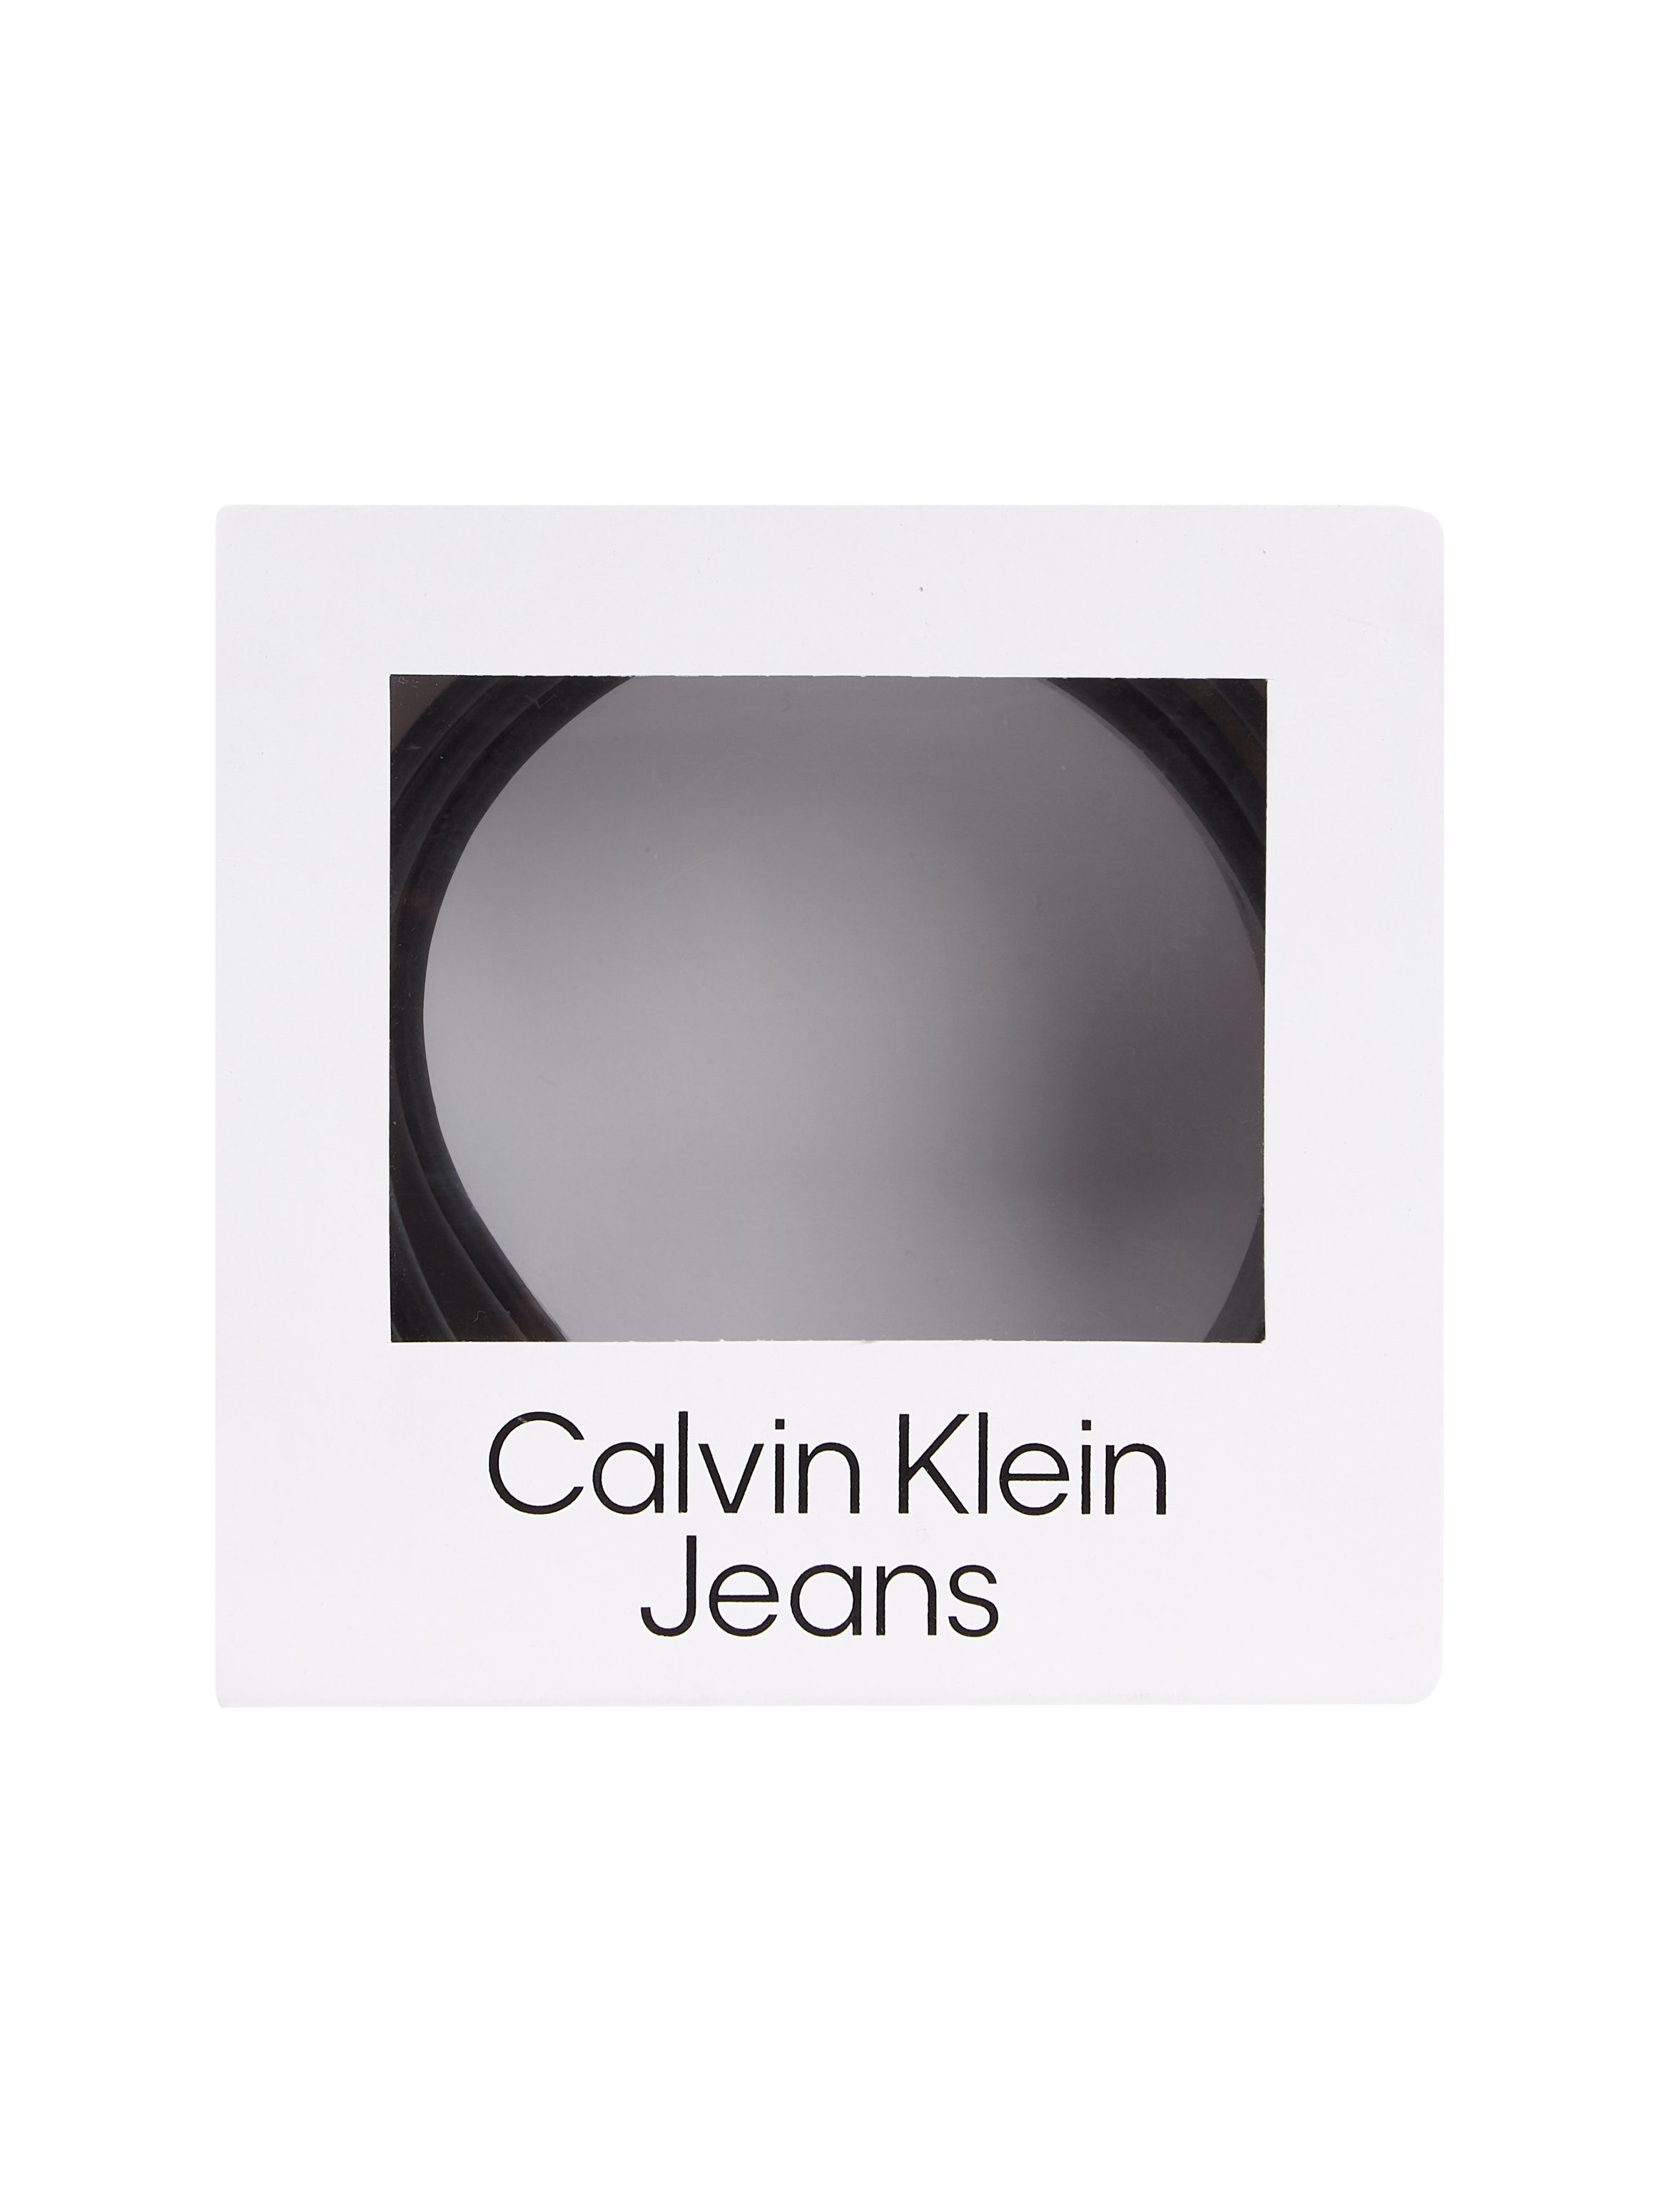 GIFT LTHR BELT CL 35MM Ledergürtel Jeans Calvin Klein REV/ADJ